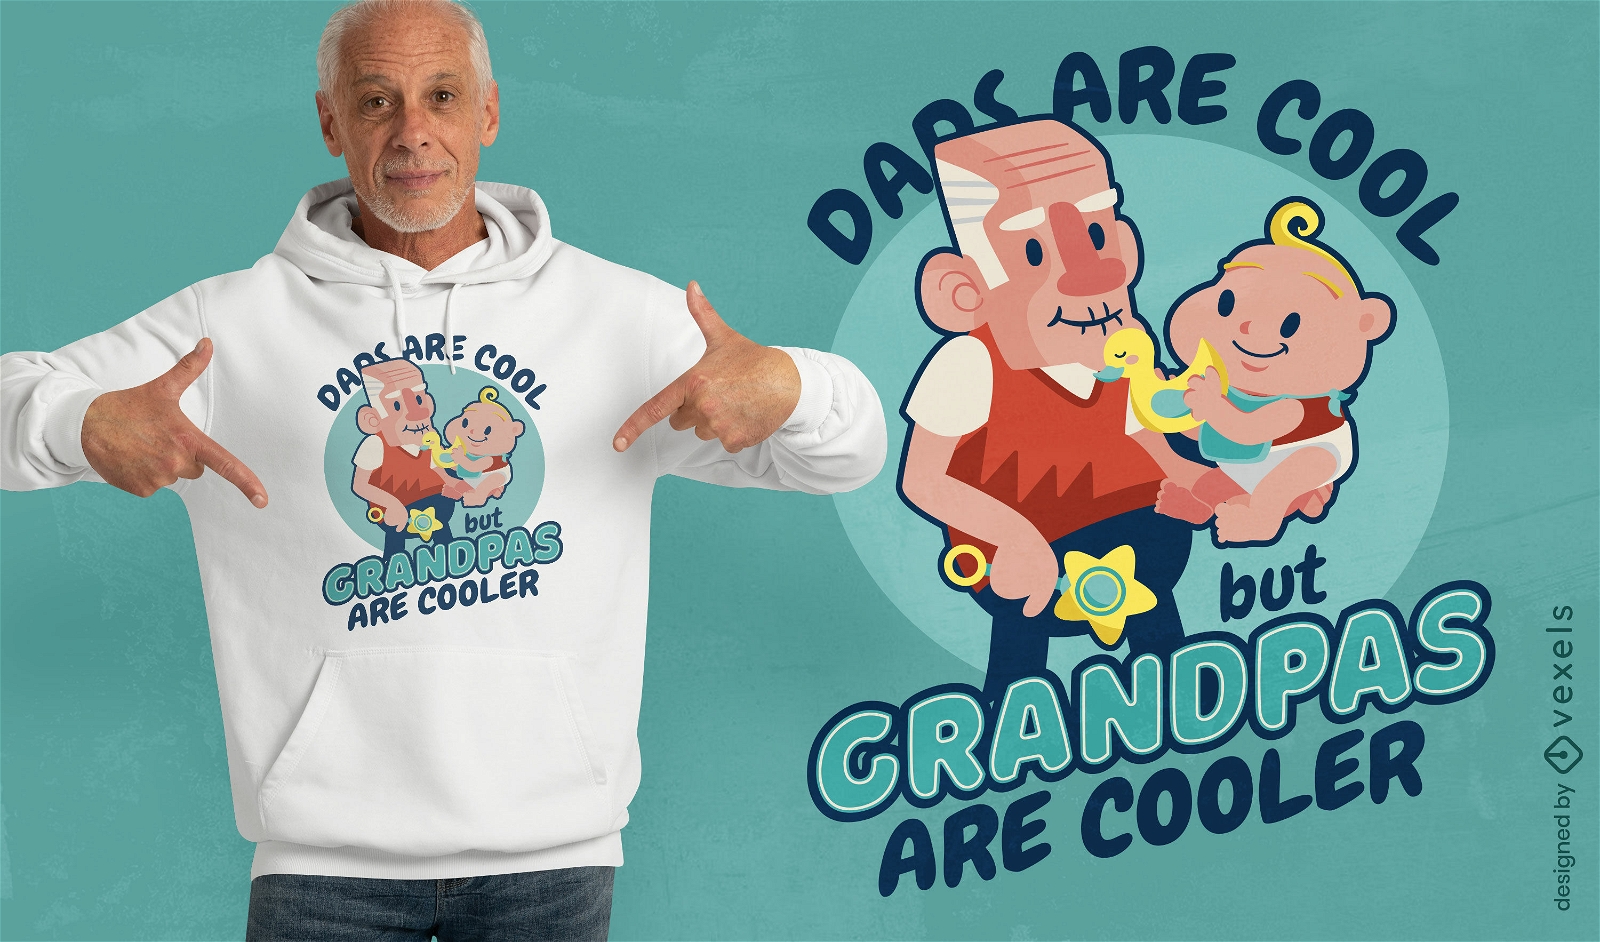 Los abuelos son un dise?o de camiseta m?s genial.